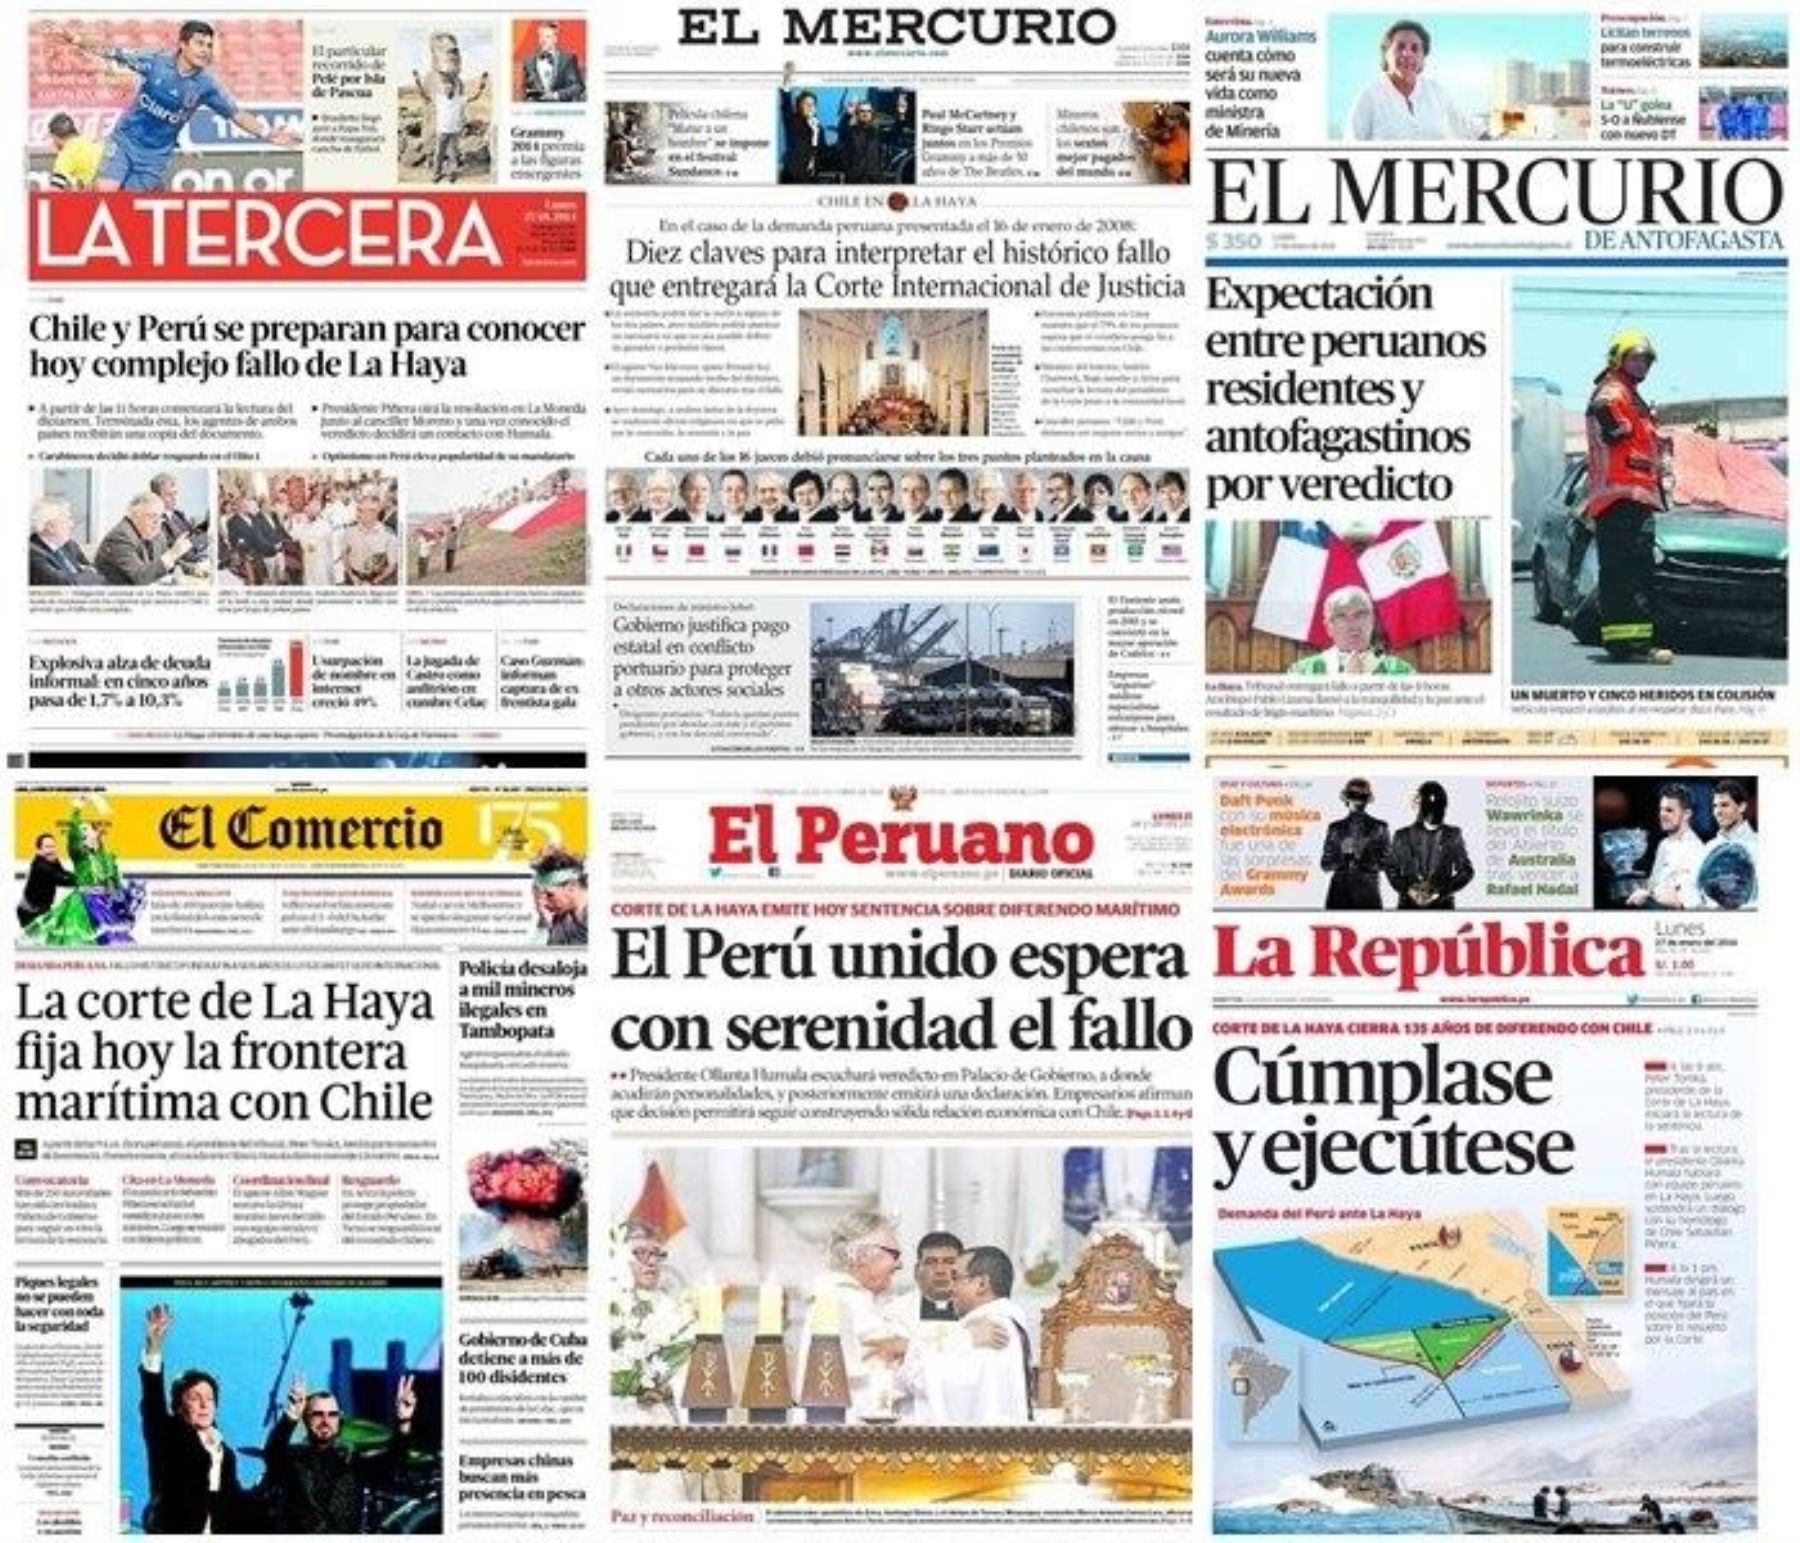 Principales portadas de diarios peruanos y chilenos sobre el fallo de La Haya.